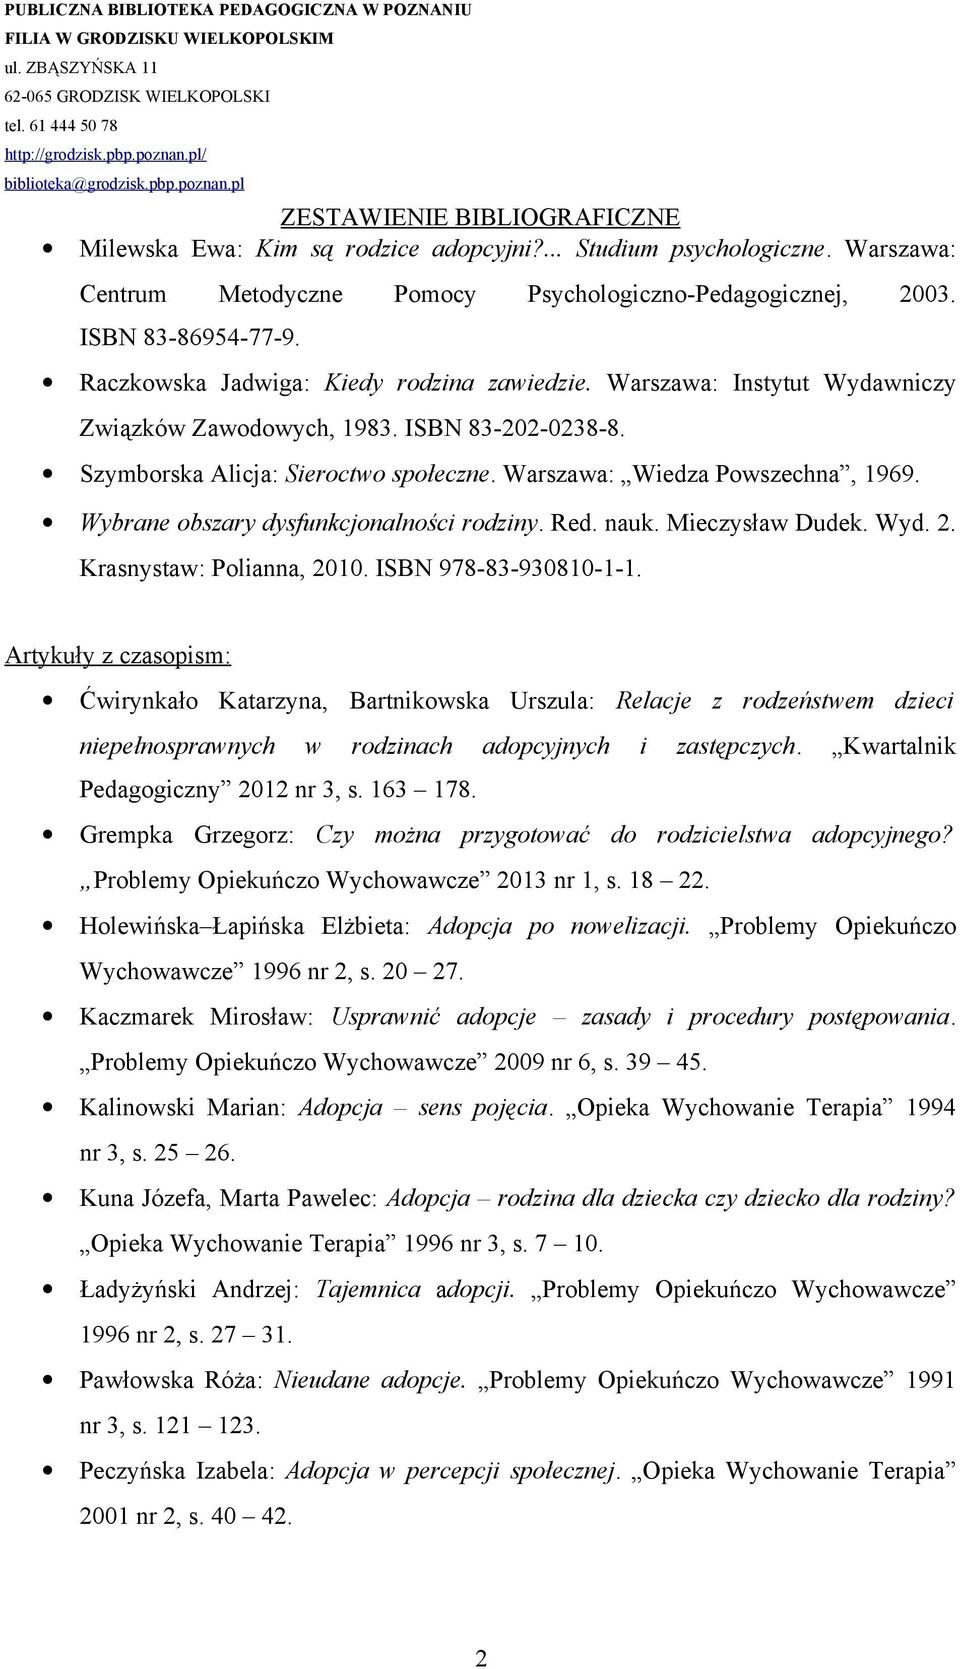 Wybrane obszary dysfunkcjonalności rodziny. Red. nauk. Mieczysław Dudek. Wyd. 2. Krasnystaw: Polianna, 2010. ISBN 978-83-930810-1-1.